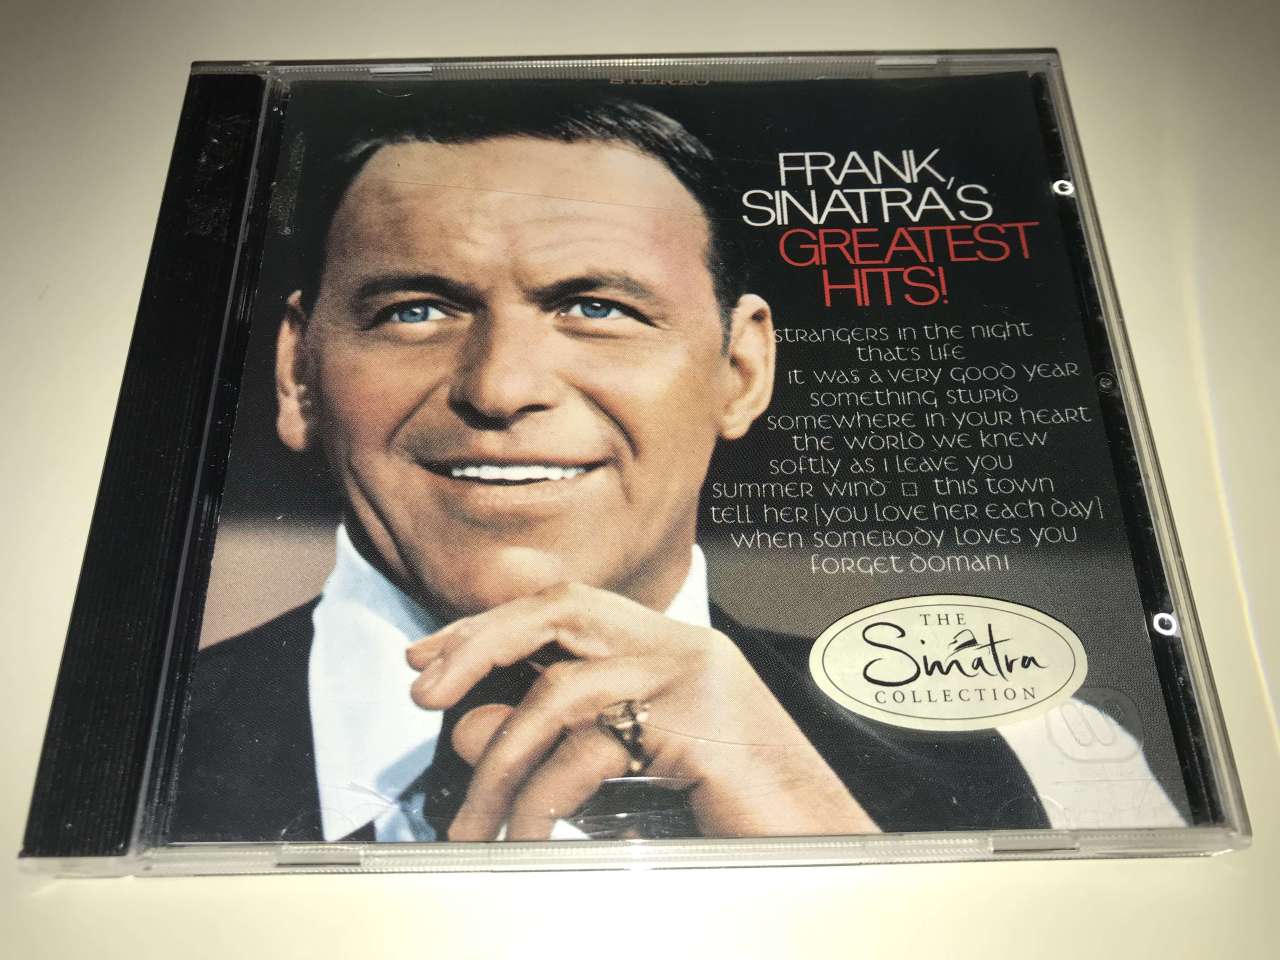 Frank Sinatra – Frank Sinatra's Greatest Hits!